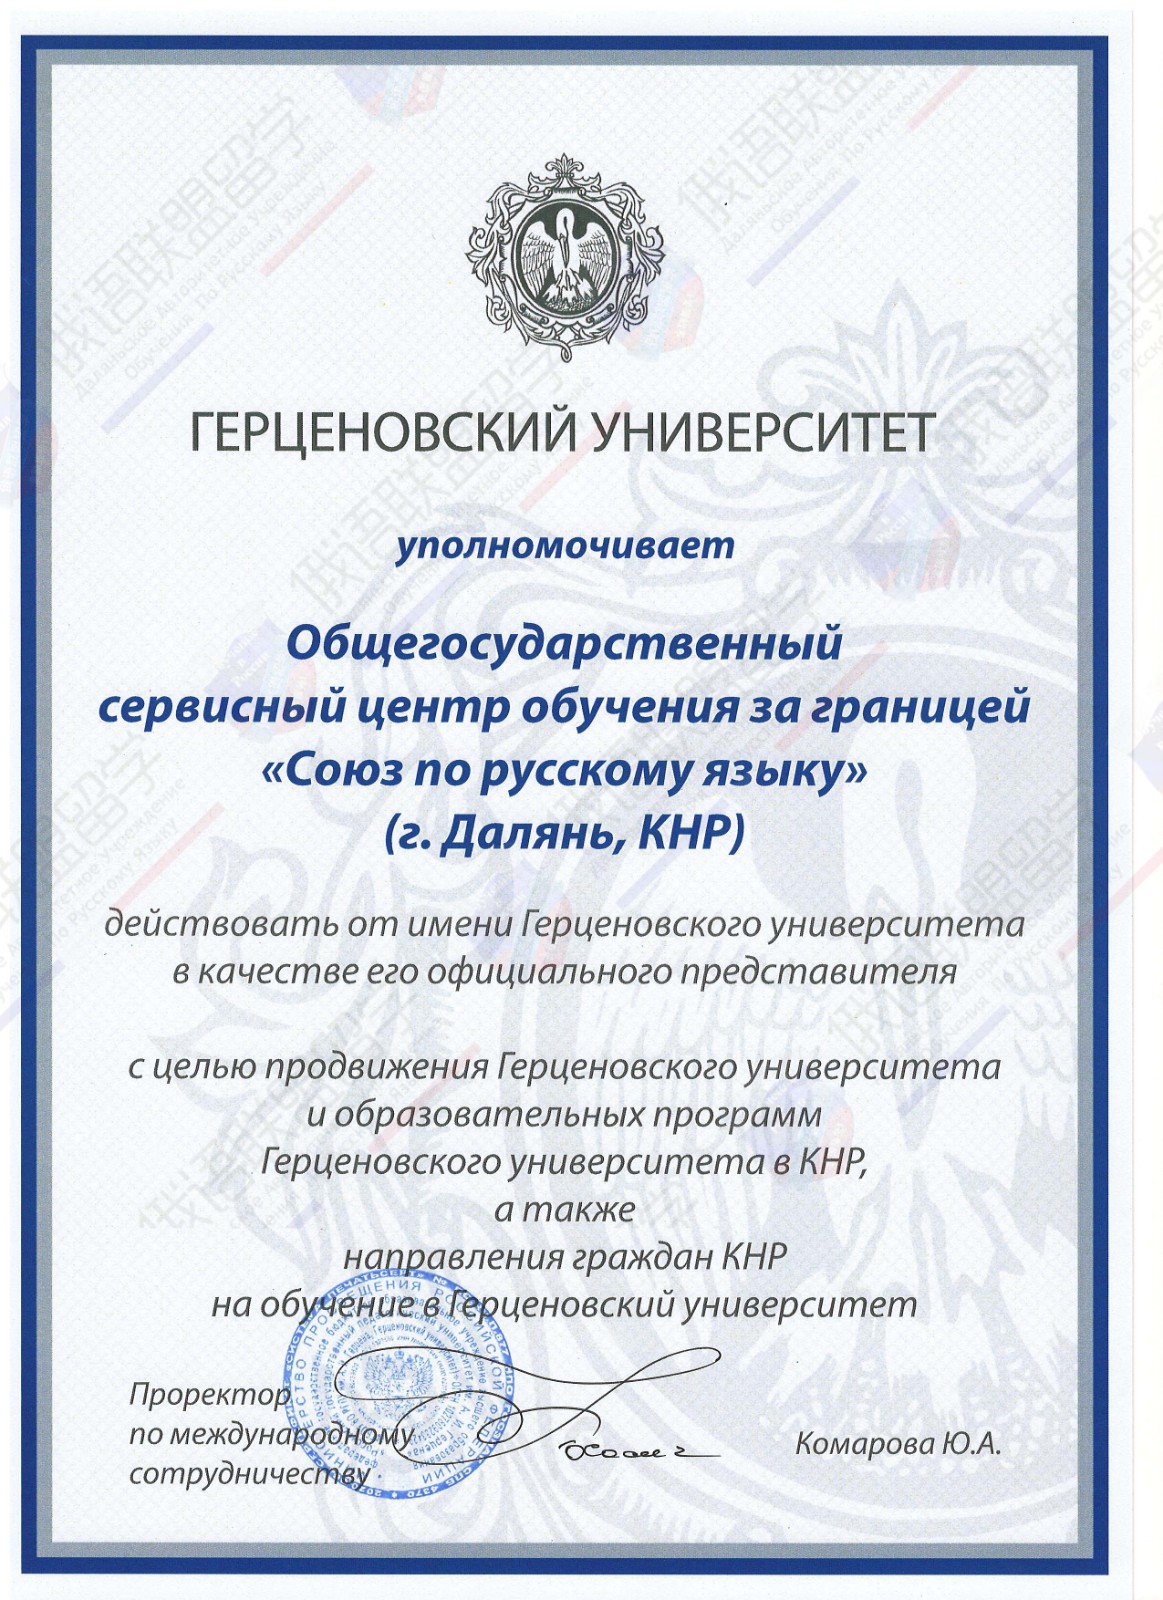 俄罗斯国立师范大学--中国区授权招生证书.jpg